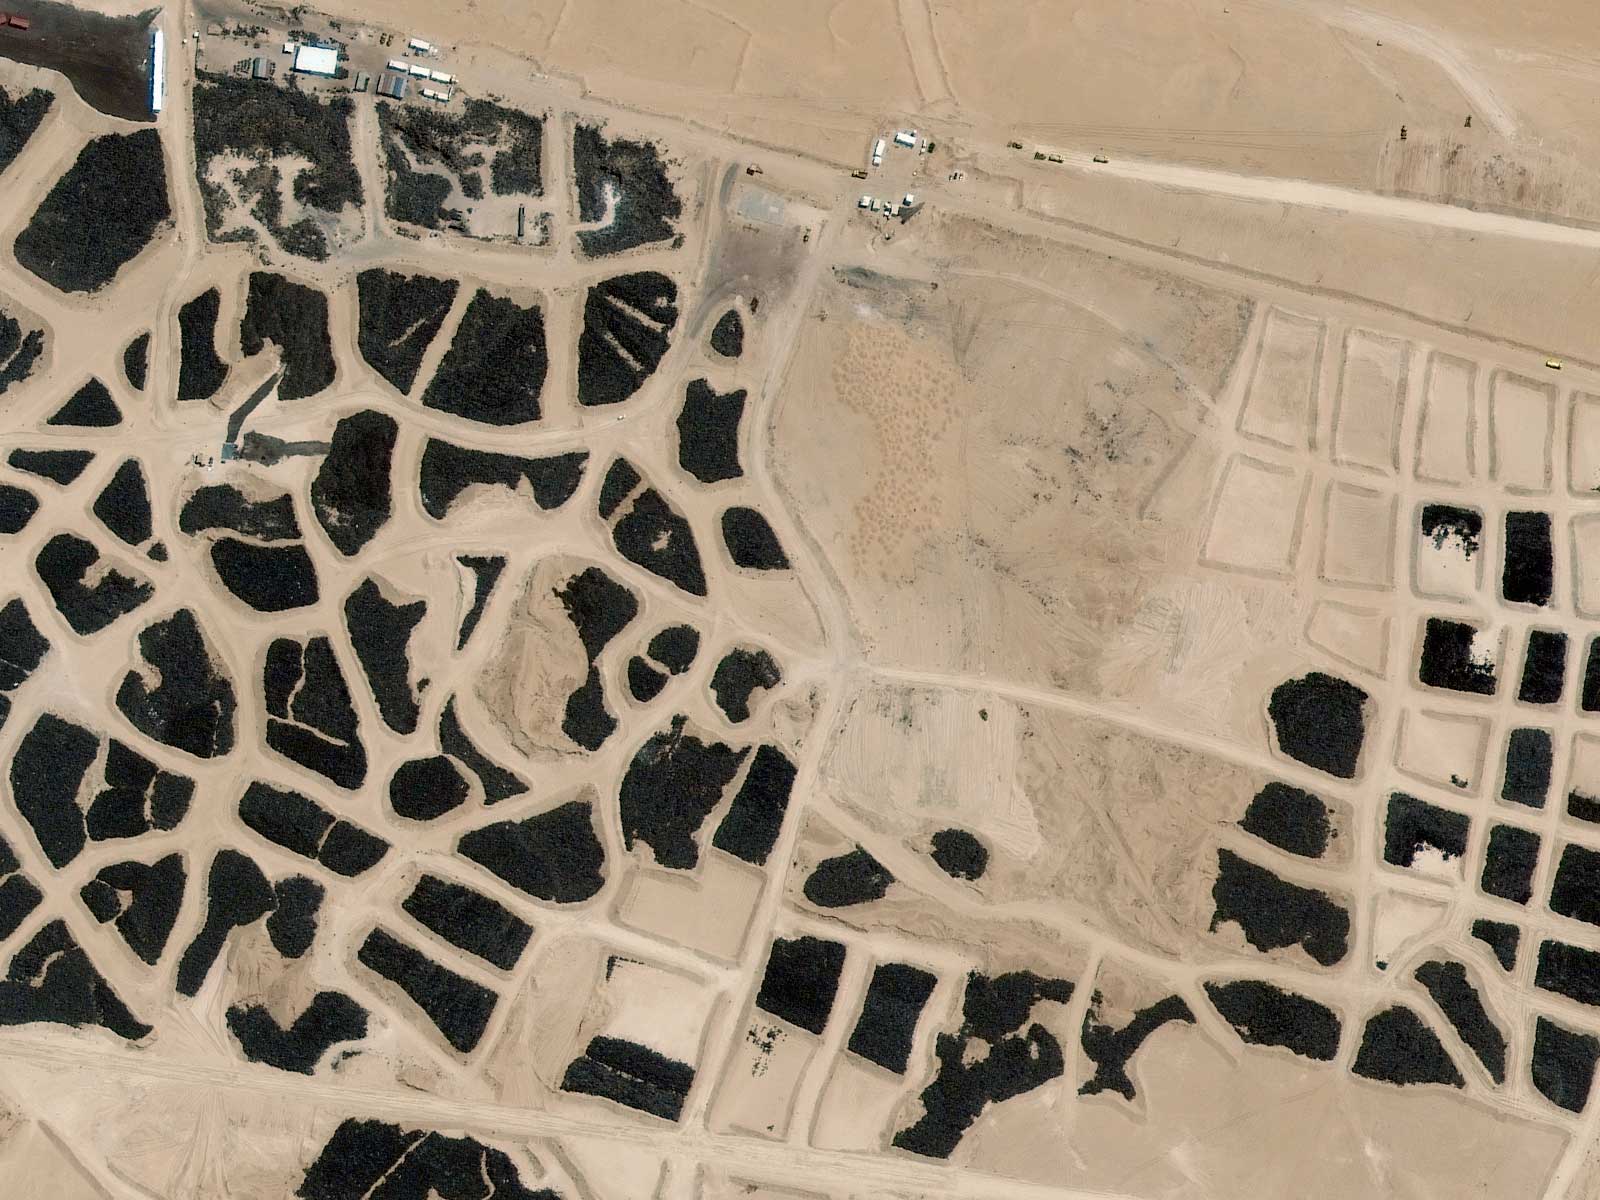 World’s largest tire graveyard in Sulaibiya, Kuwait, June 4, 2014.